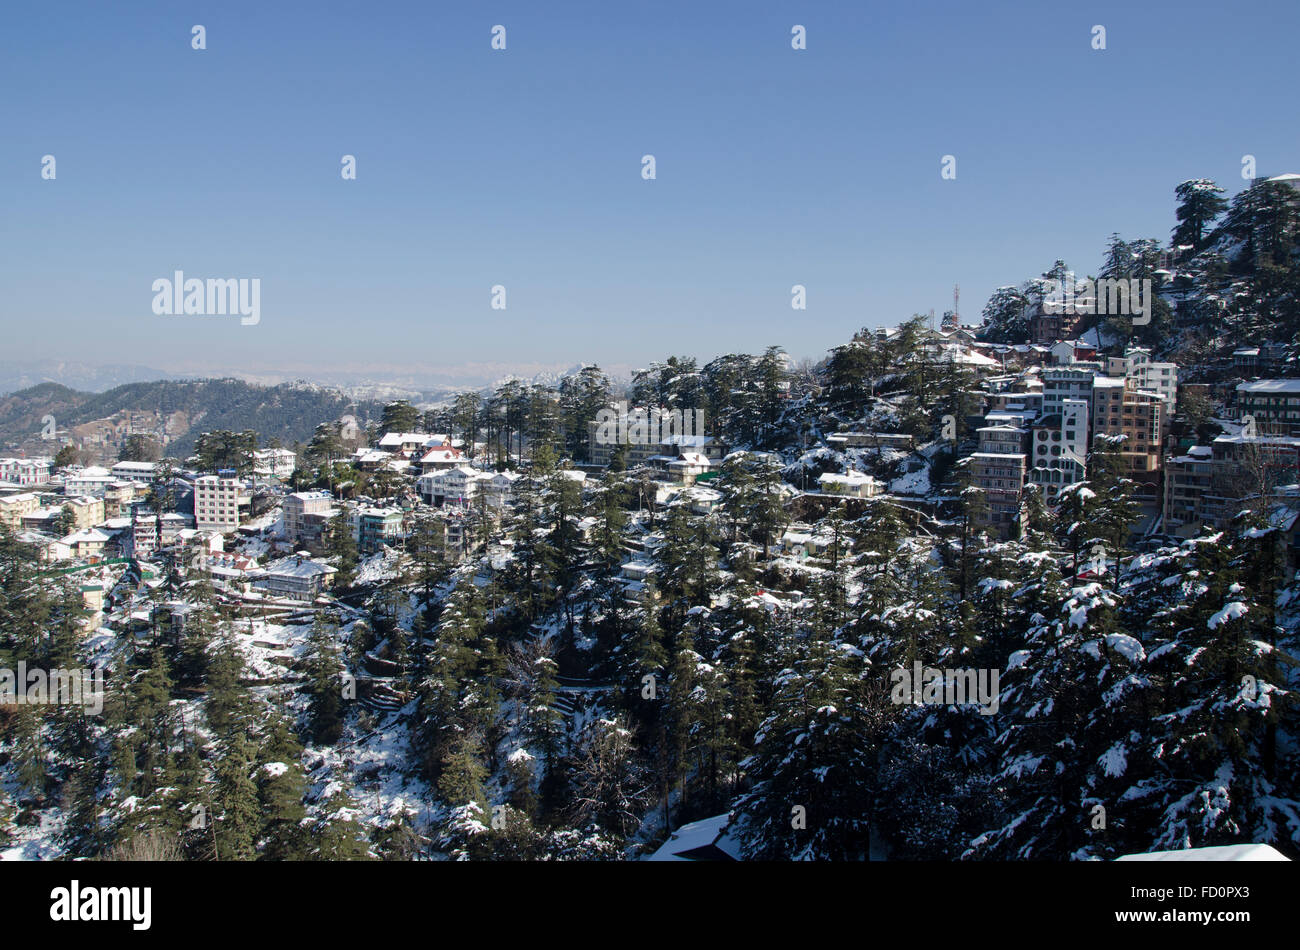 Shimla in winter, Himachal Pradesh, India Stock Photo